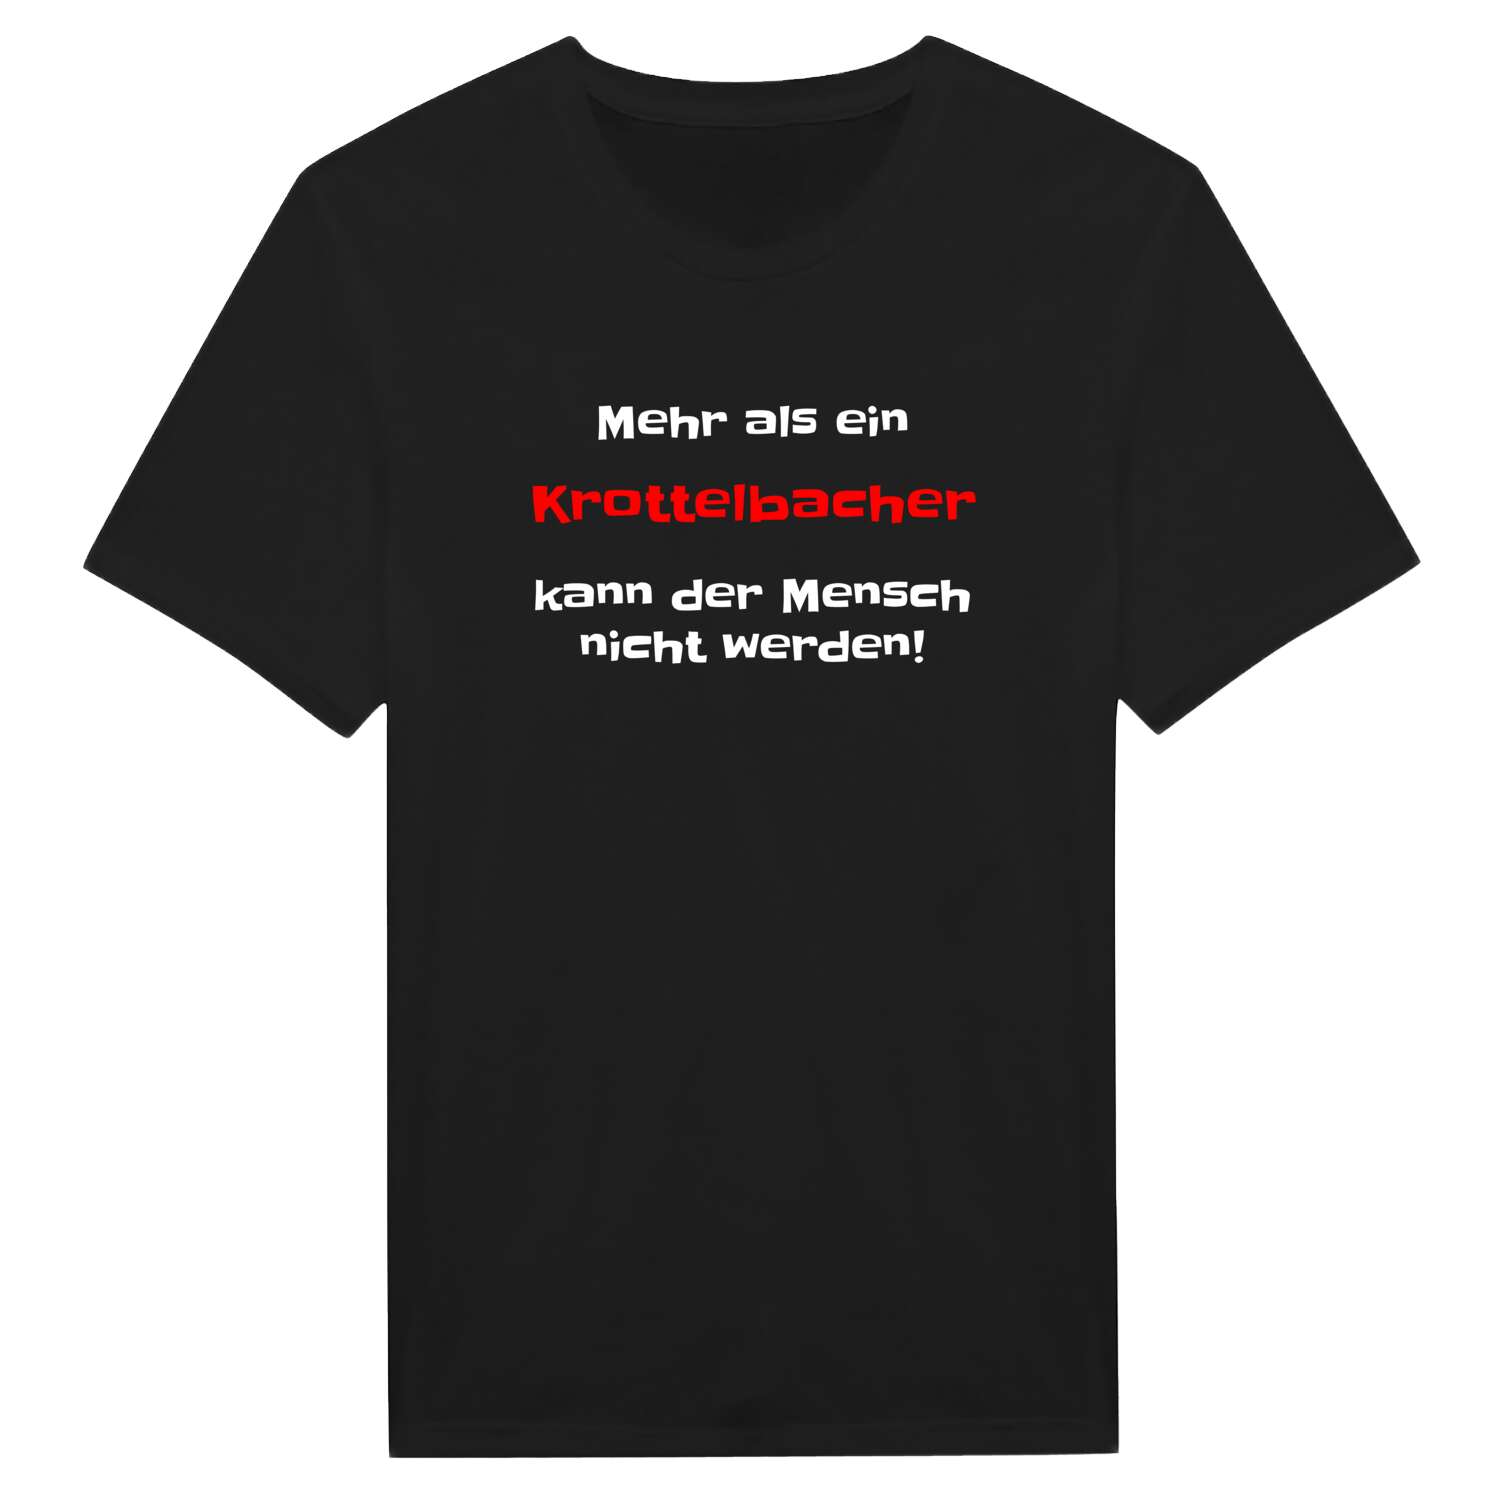 Krottelbach T-Shirt »Mehr als ein«